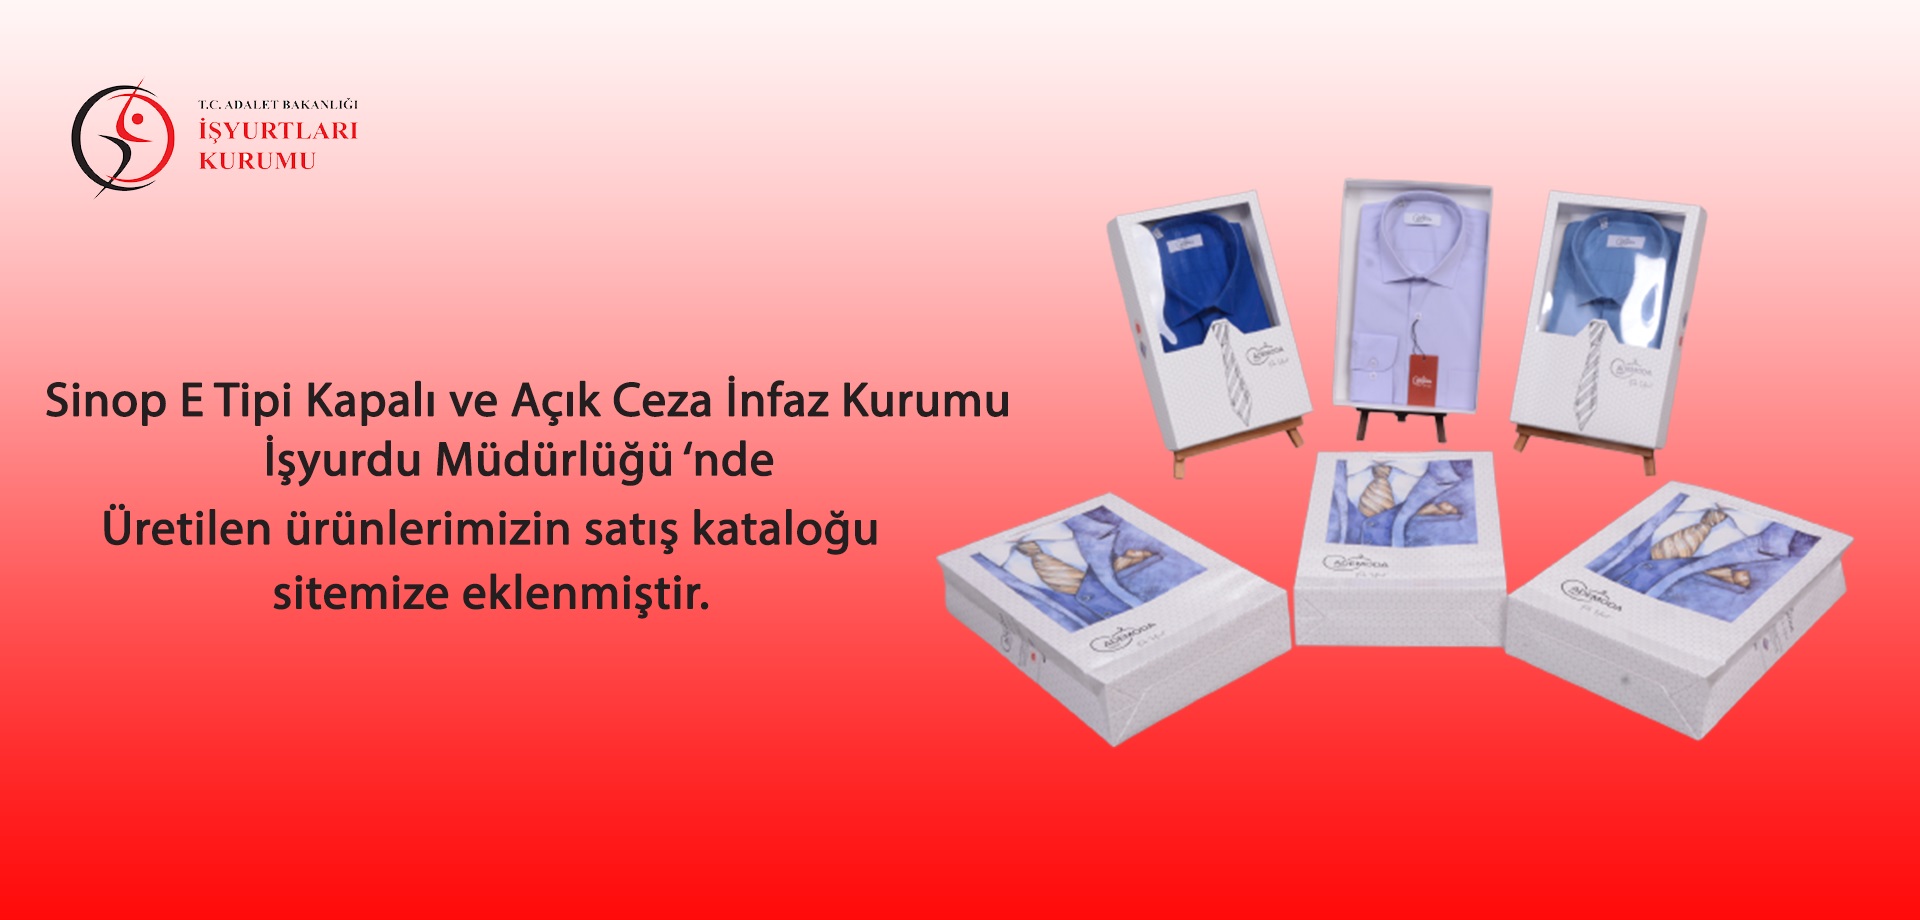 Sinop E Tipi Kapalı ve Açık Ceza İnfaz Kurumu İşyurdu Müdürlüğü'nde üretilen ürünlerimizin satış kataloğu sitemize eklenmiştir.